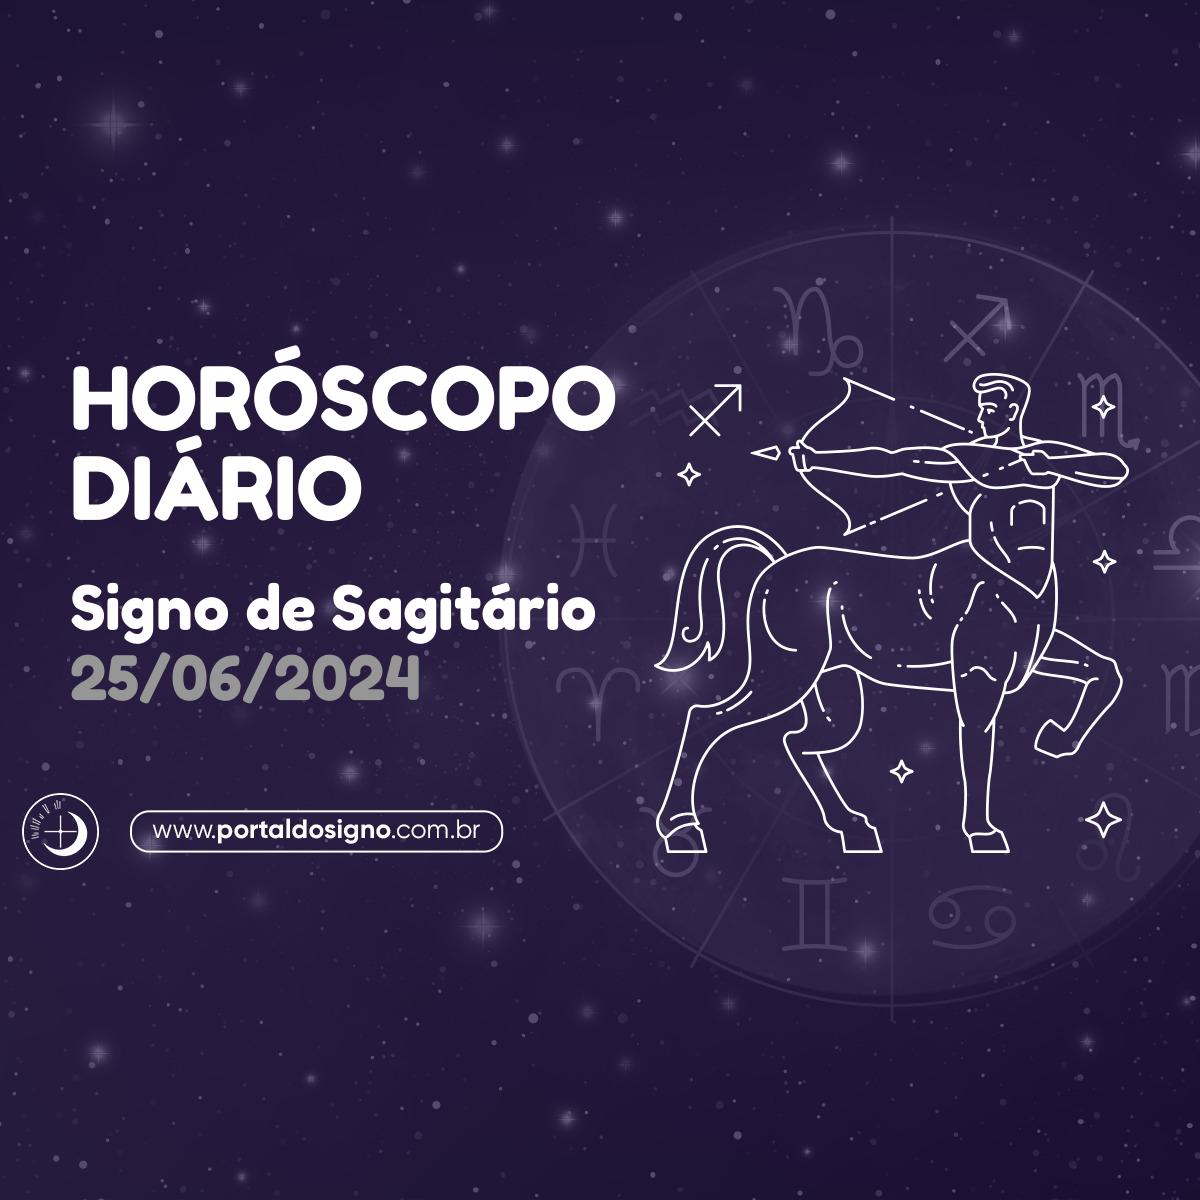 Horóscopo diário para Sagitário em 25/06/2024